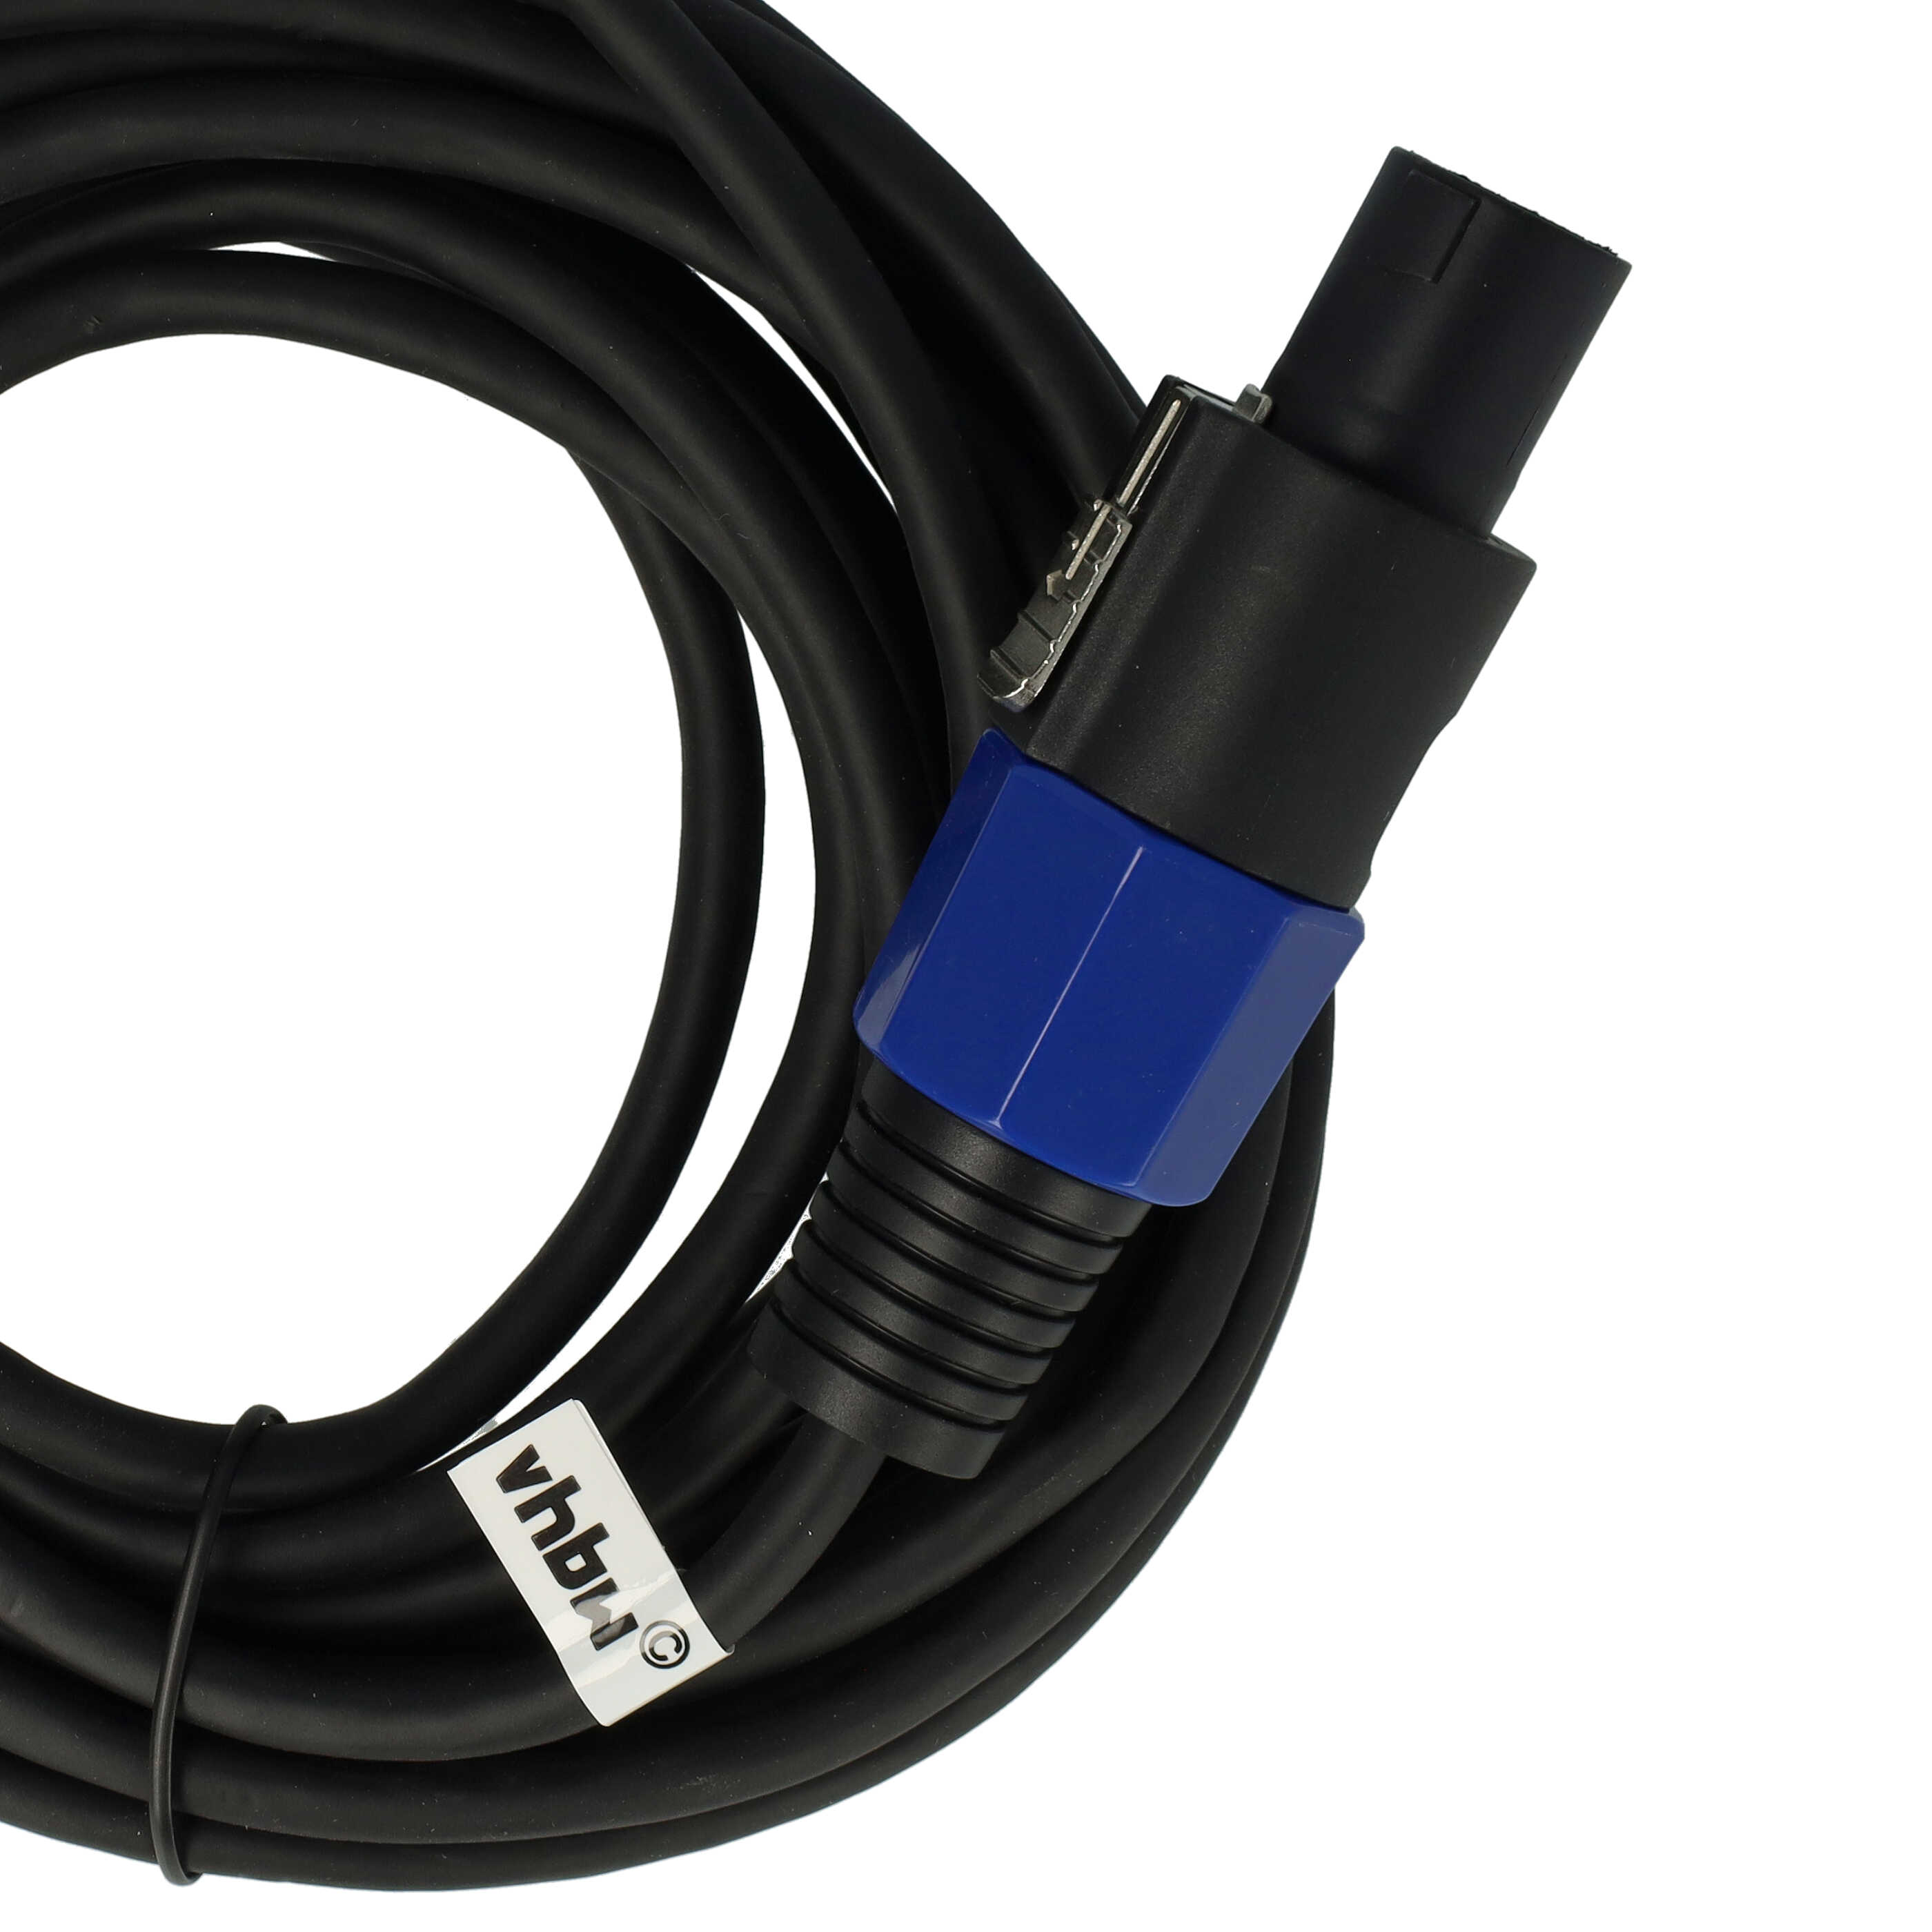 vhbw Cable de conexión PA - cable audio, 5 m negro